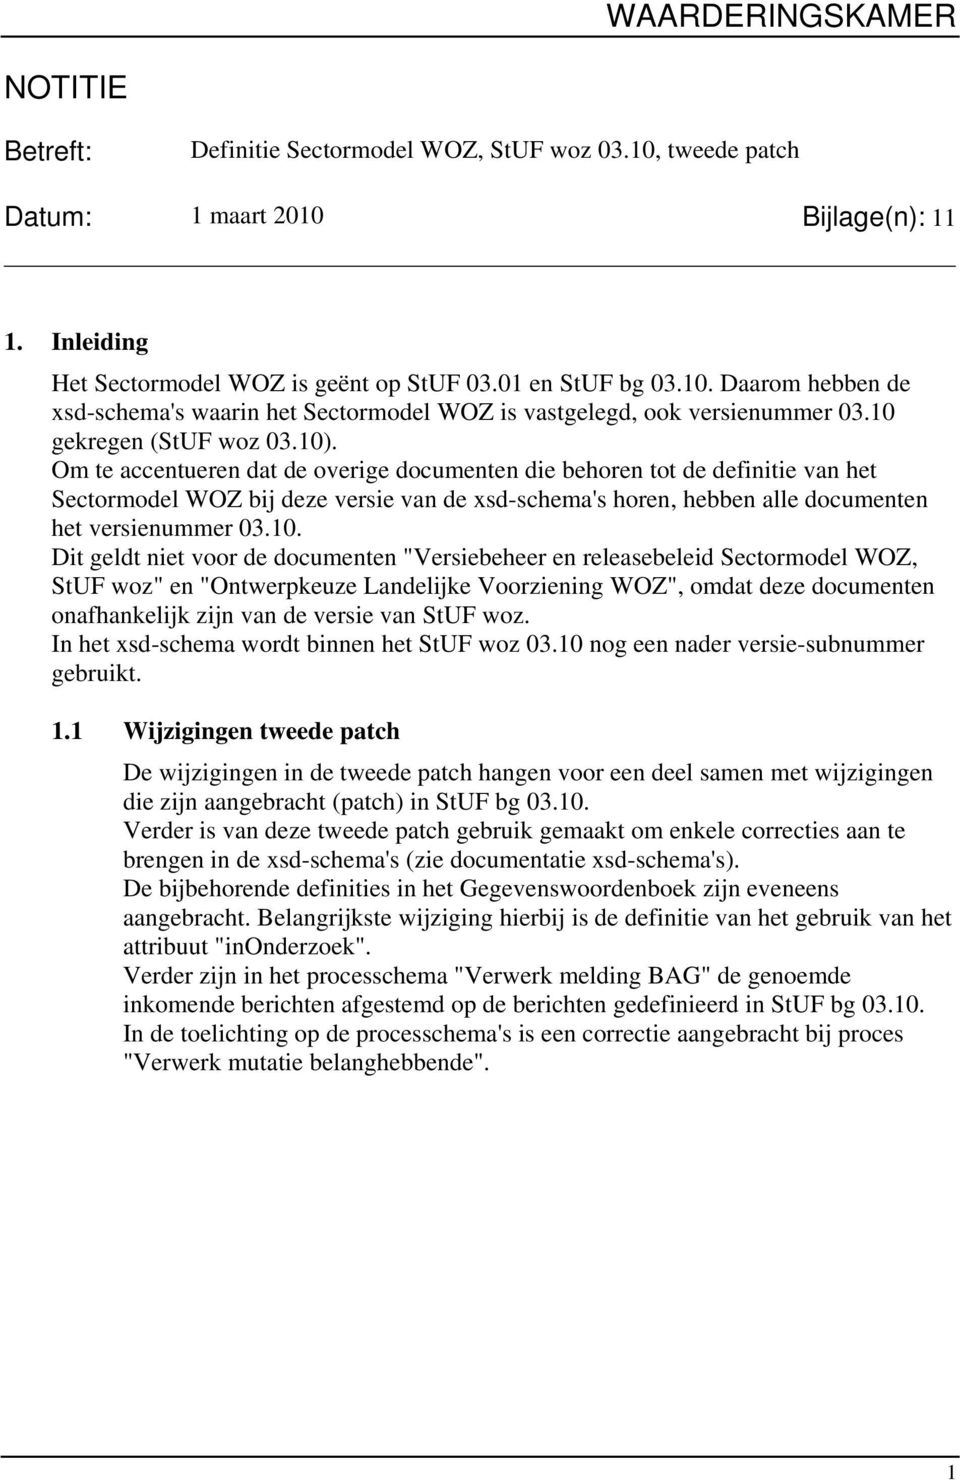 Om te accentueren dat de overige documenten die behoren tot de definitie van het Sectormodel WOZ bij deze versie van de xsd-schema's horen, hebben alle documenten het versienummer 03.10.